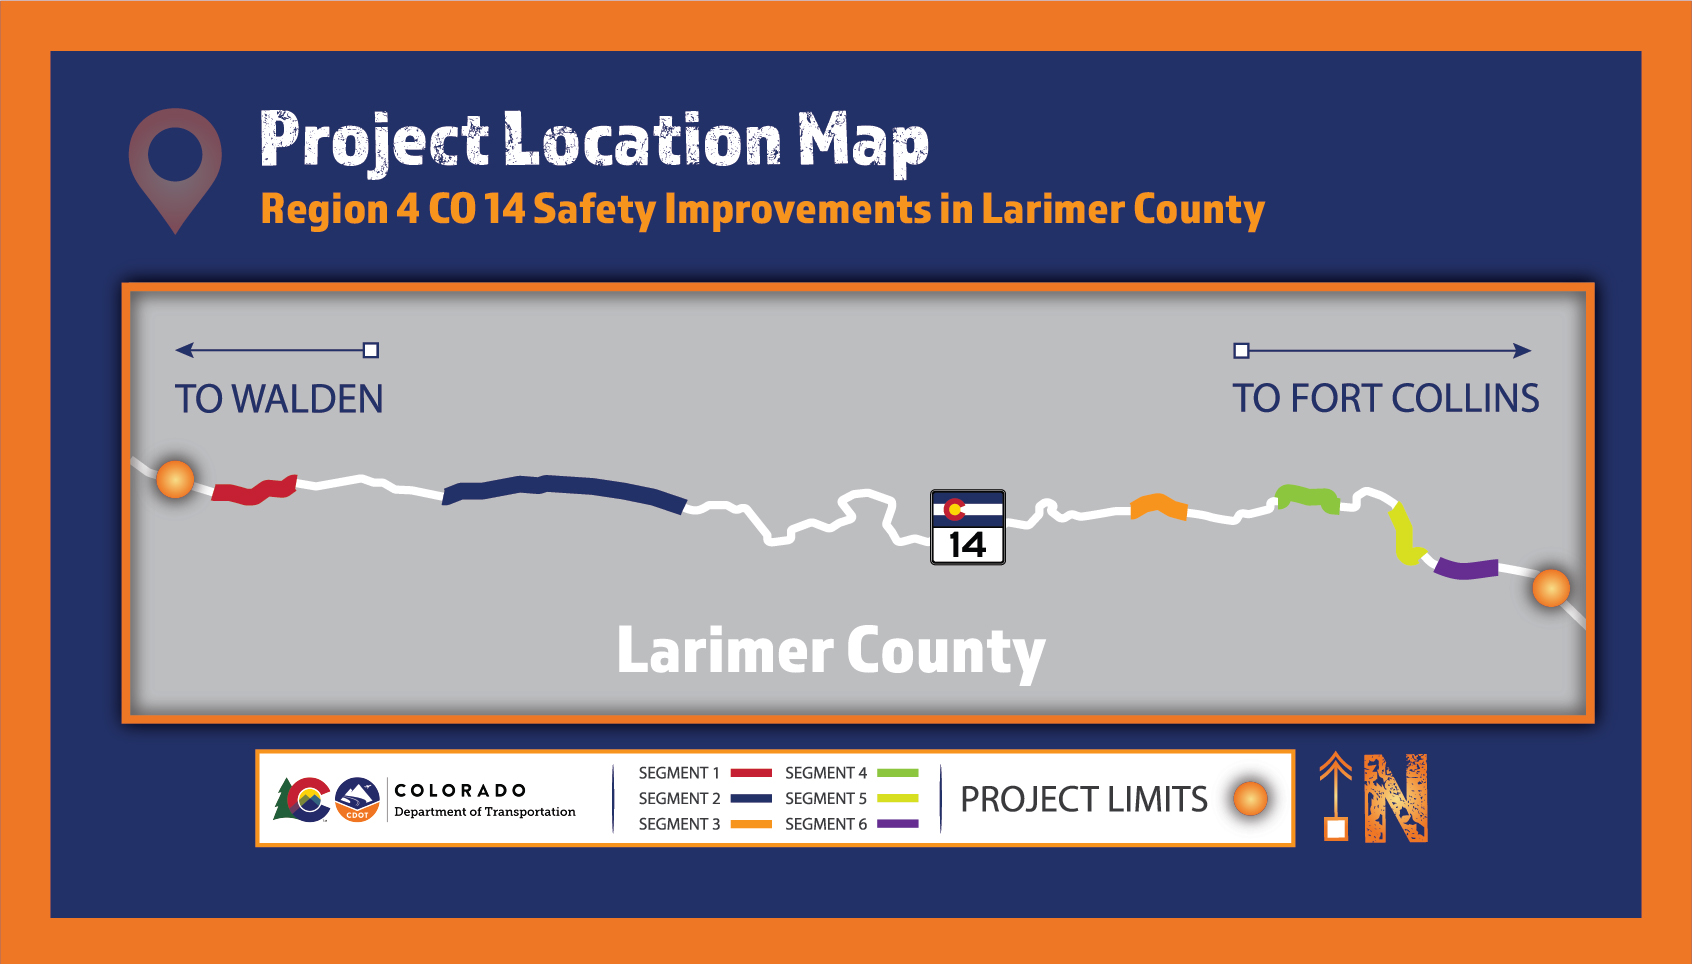 R4 CO 14 Safety Improvements in Larimer Co V1 4.6.2021-03-01 (1).jpg detail image